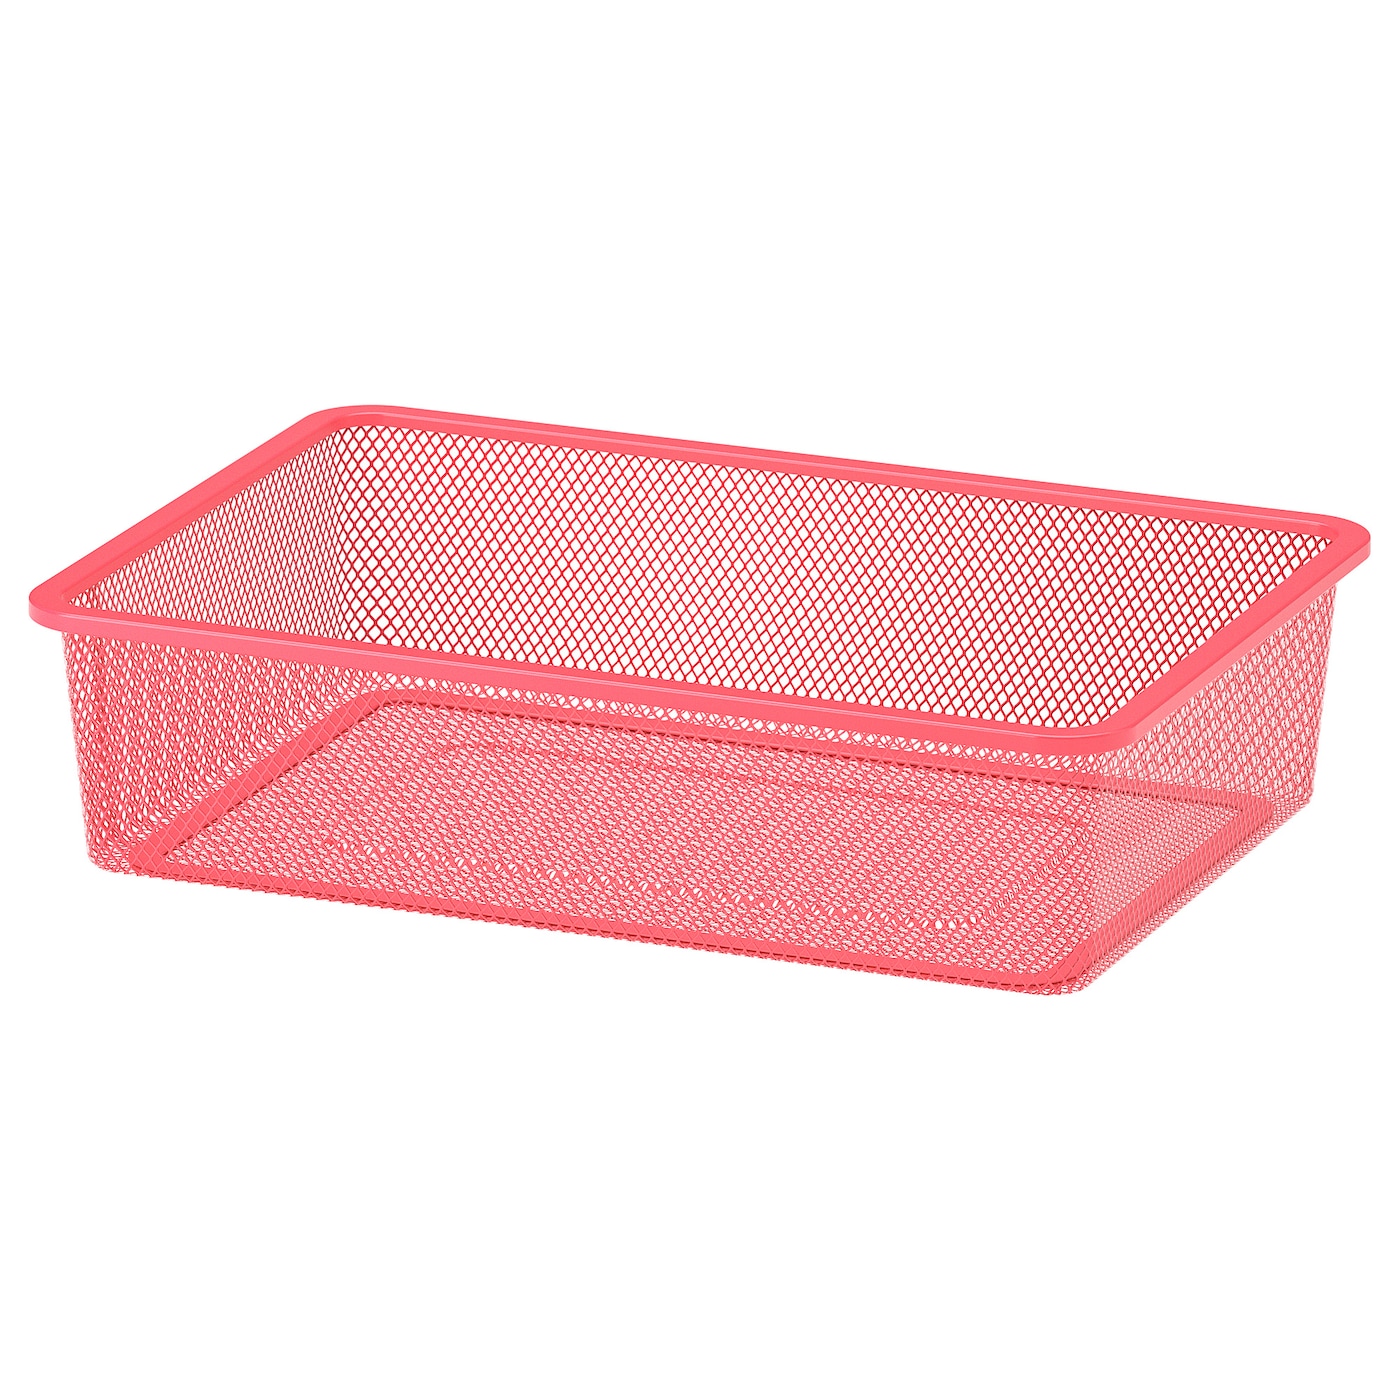 Ящик для хранения игрушек - TROFAST IKEA/ ТРУФАСТ ИКЕА, 42x30x10 см, розовый